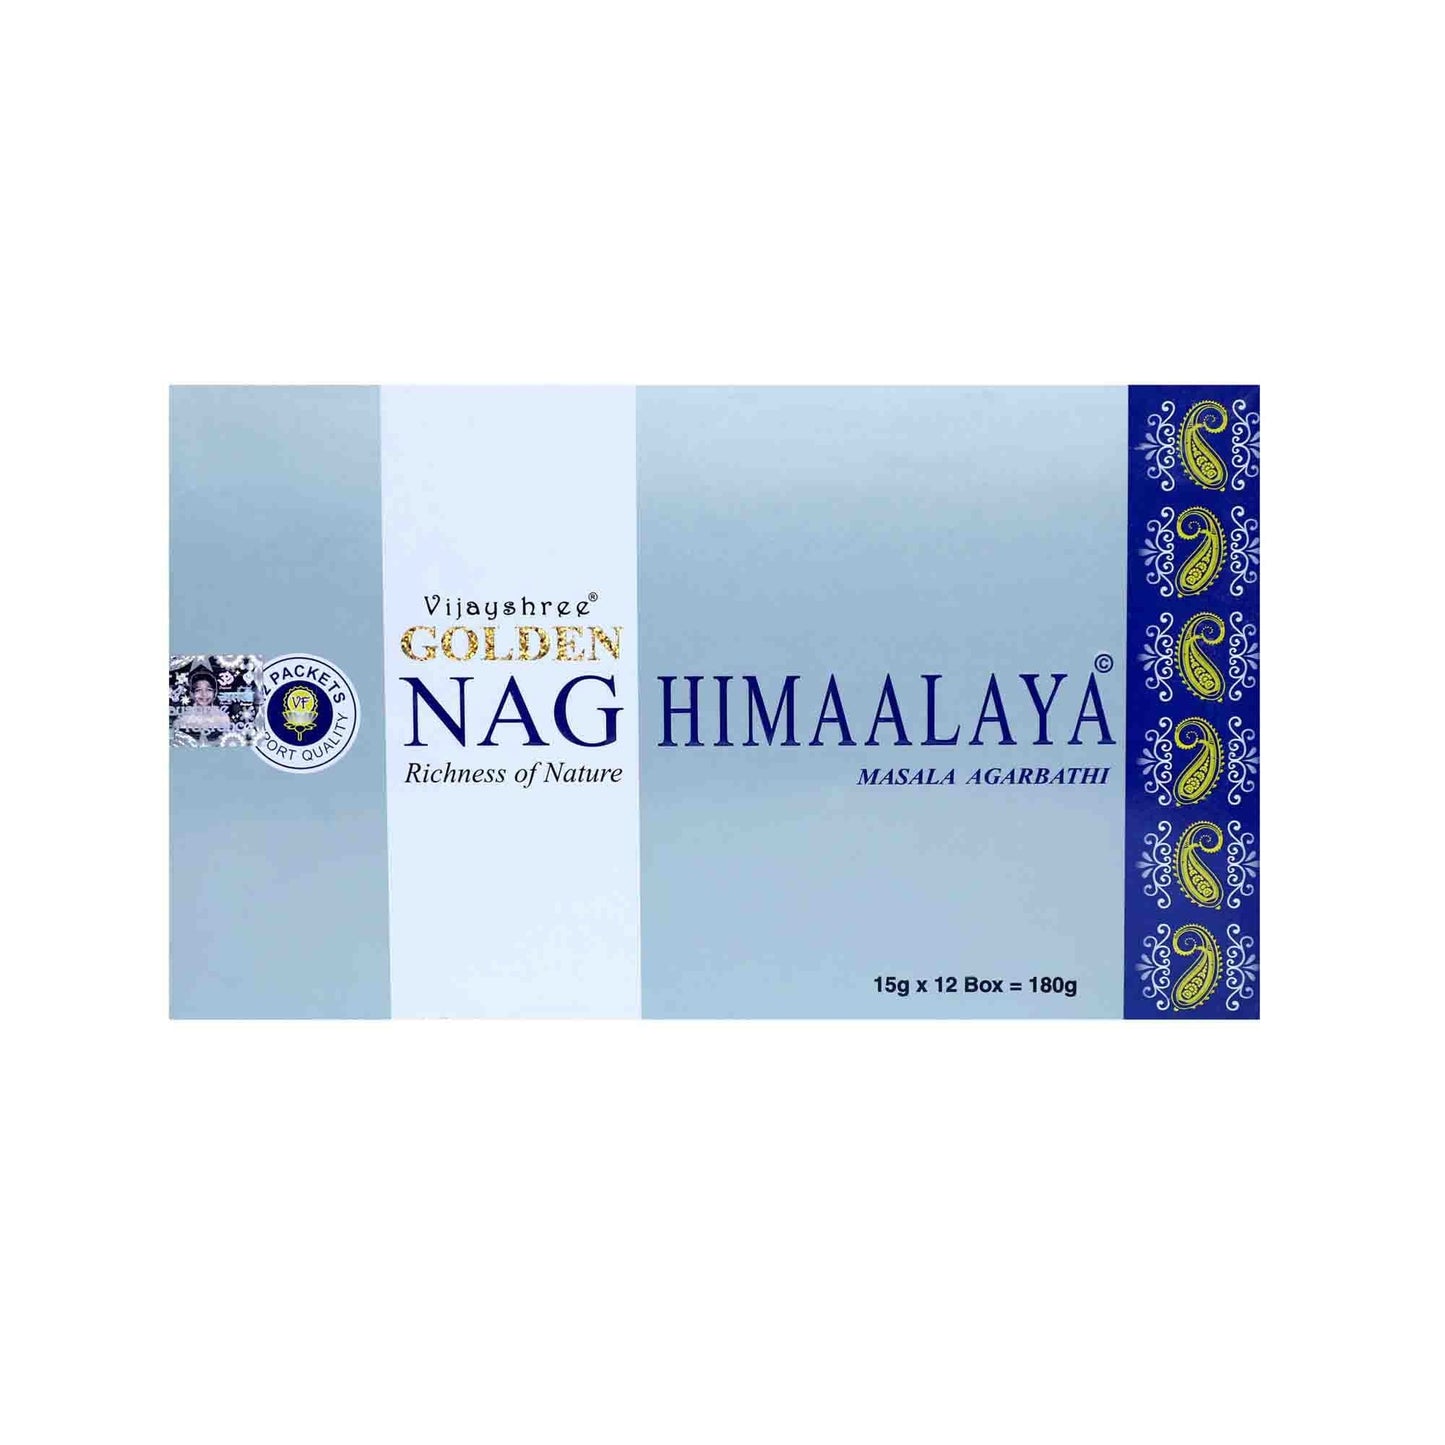 Vijayshree Nag Himaalaya Masala Incense Sticks.